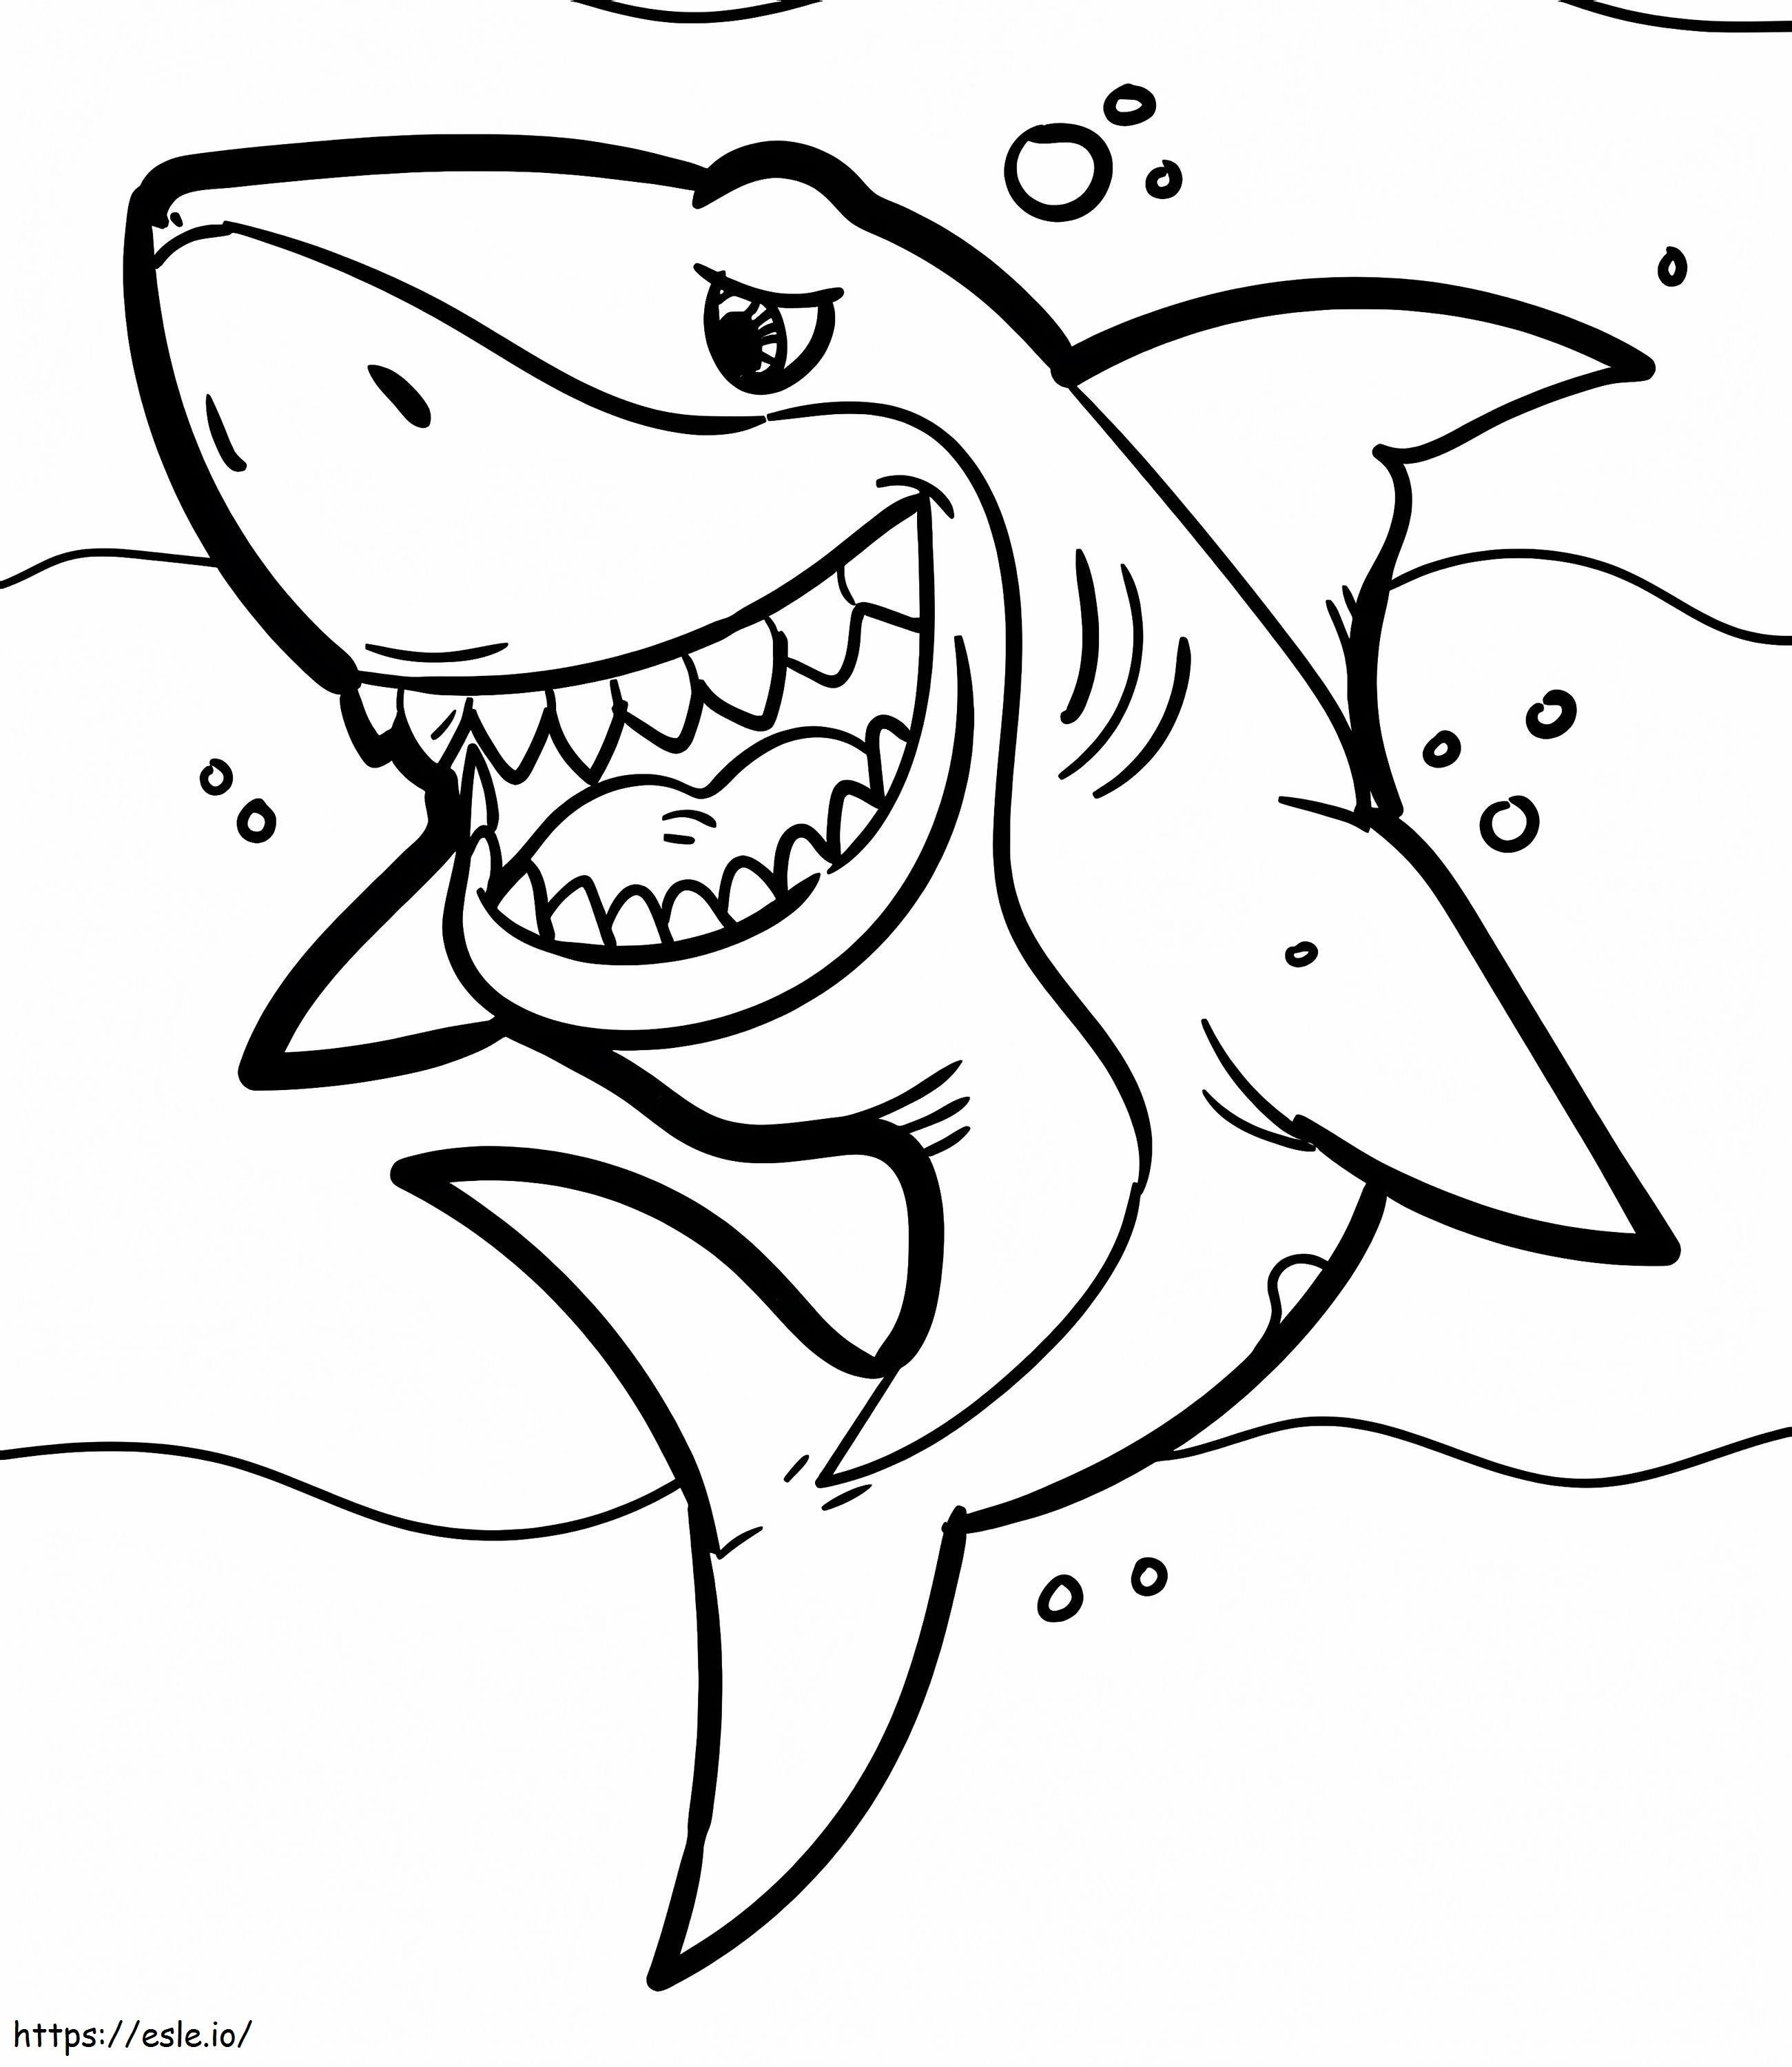 Rekin się śmieje kolorowanka